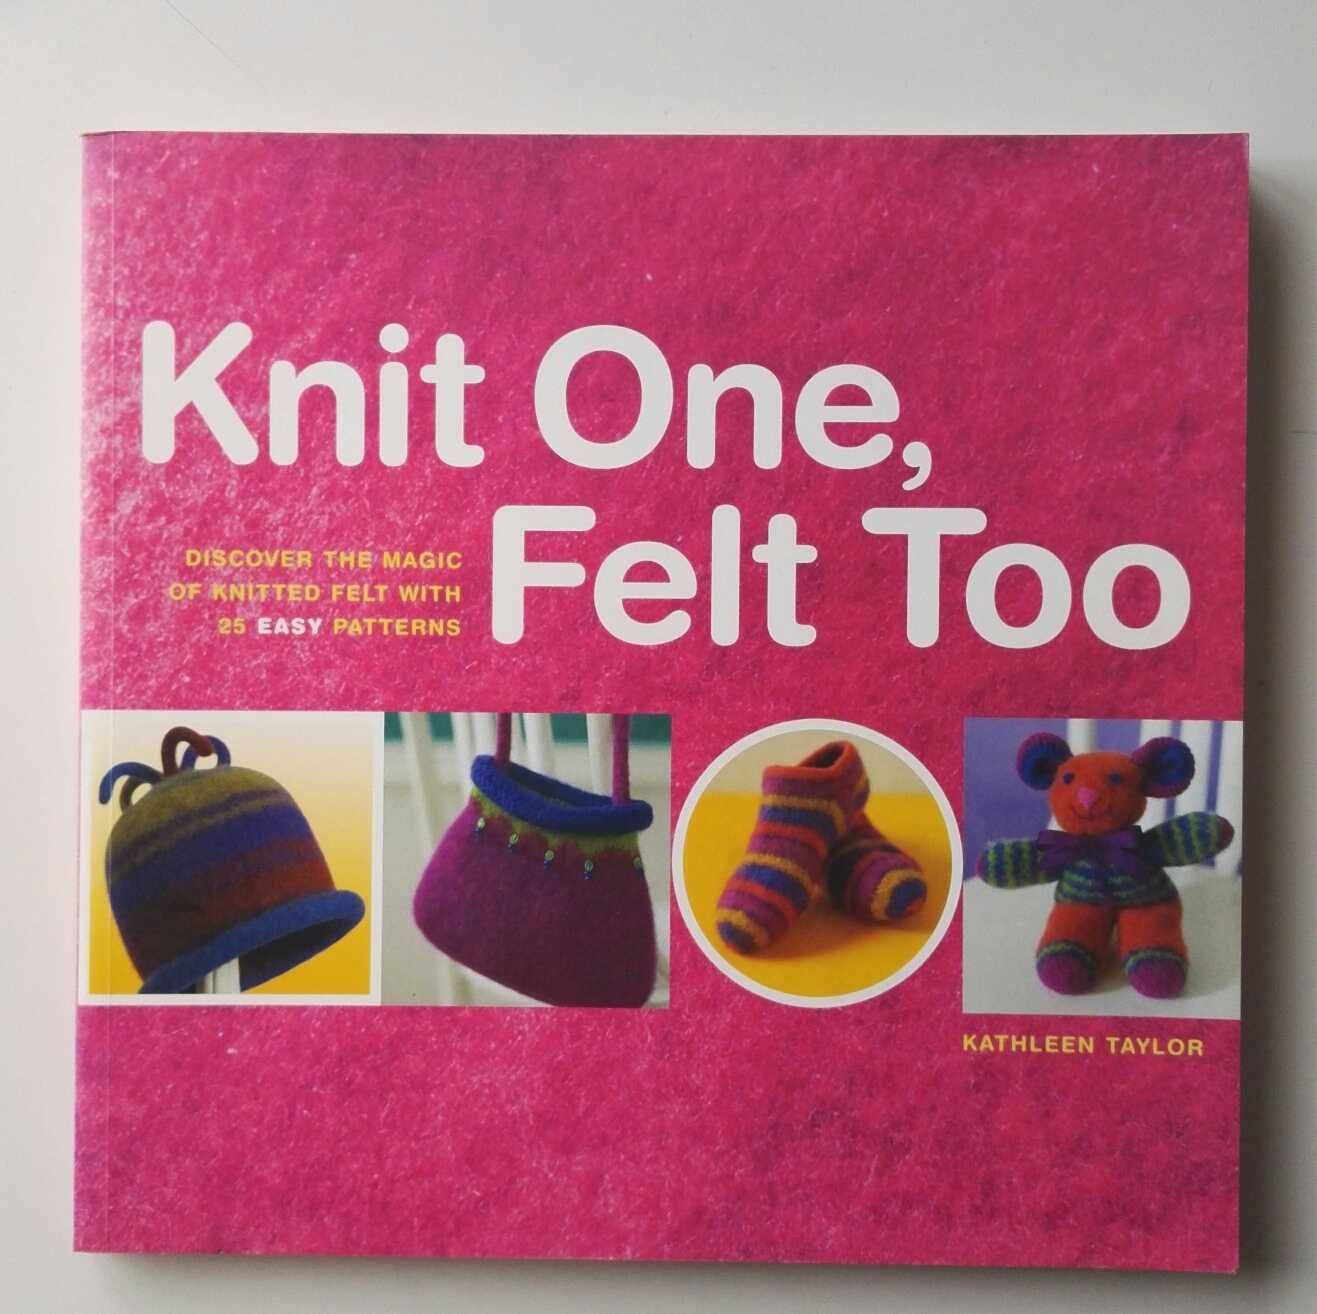 Livro de feltragem - Knit One, Felt Too, de Kathleen Taylor